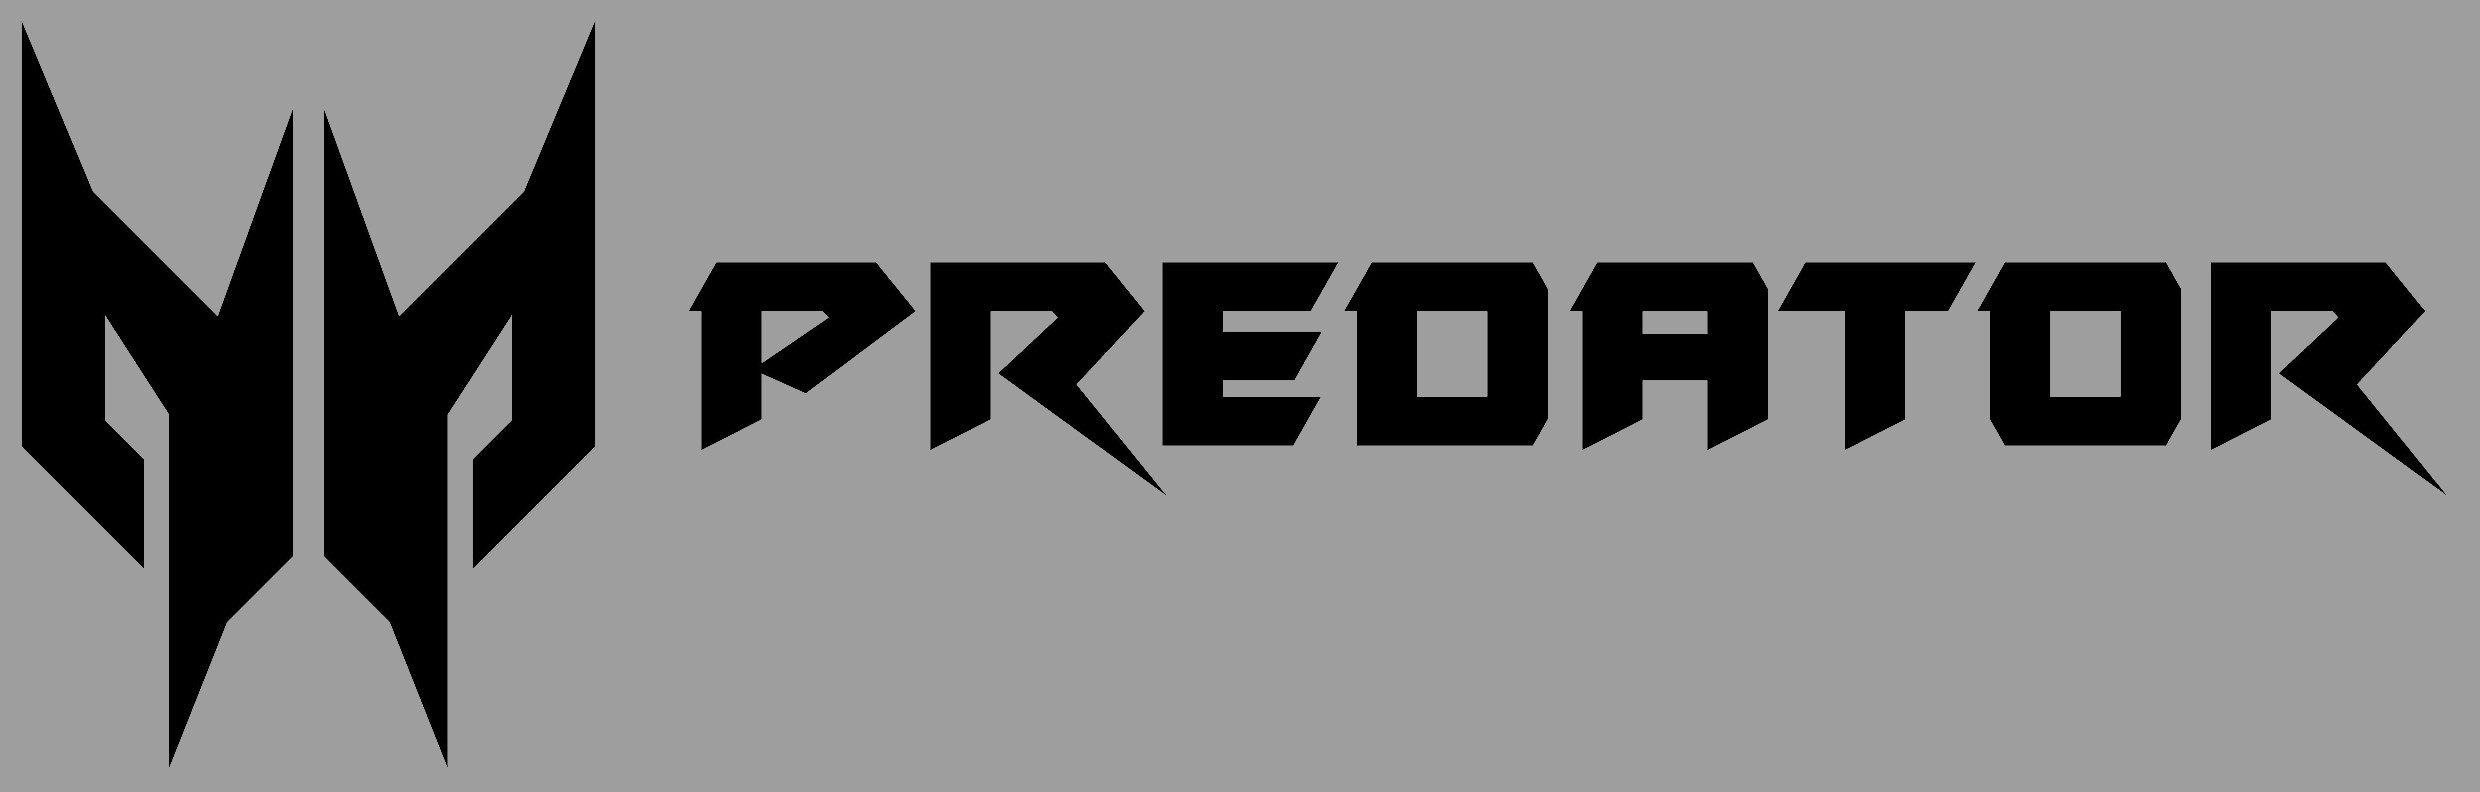 Acer-Predator-logo_grey_ve2